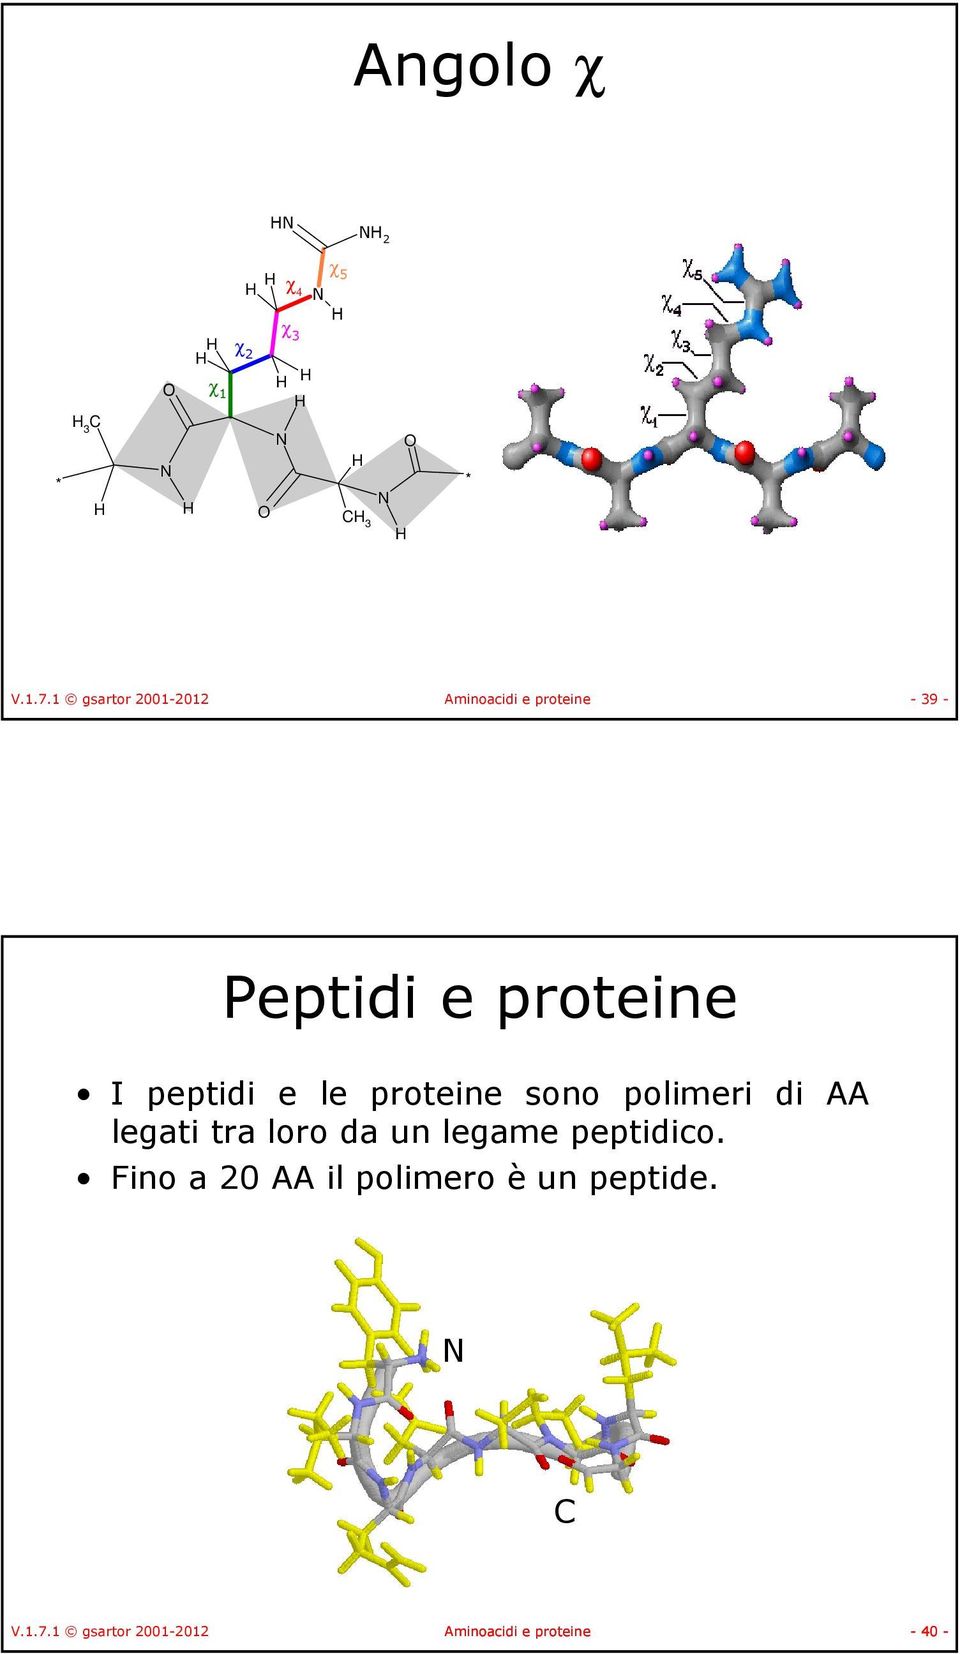 peptidi e le proteine sono polimeri di AA legati tra loro da un legame